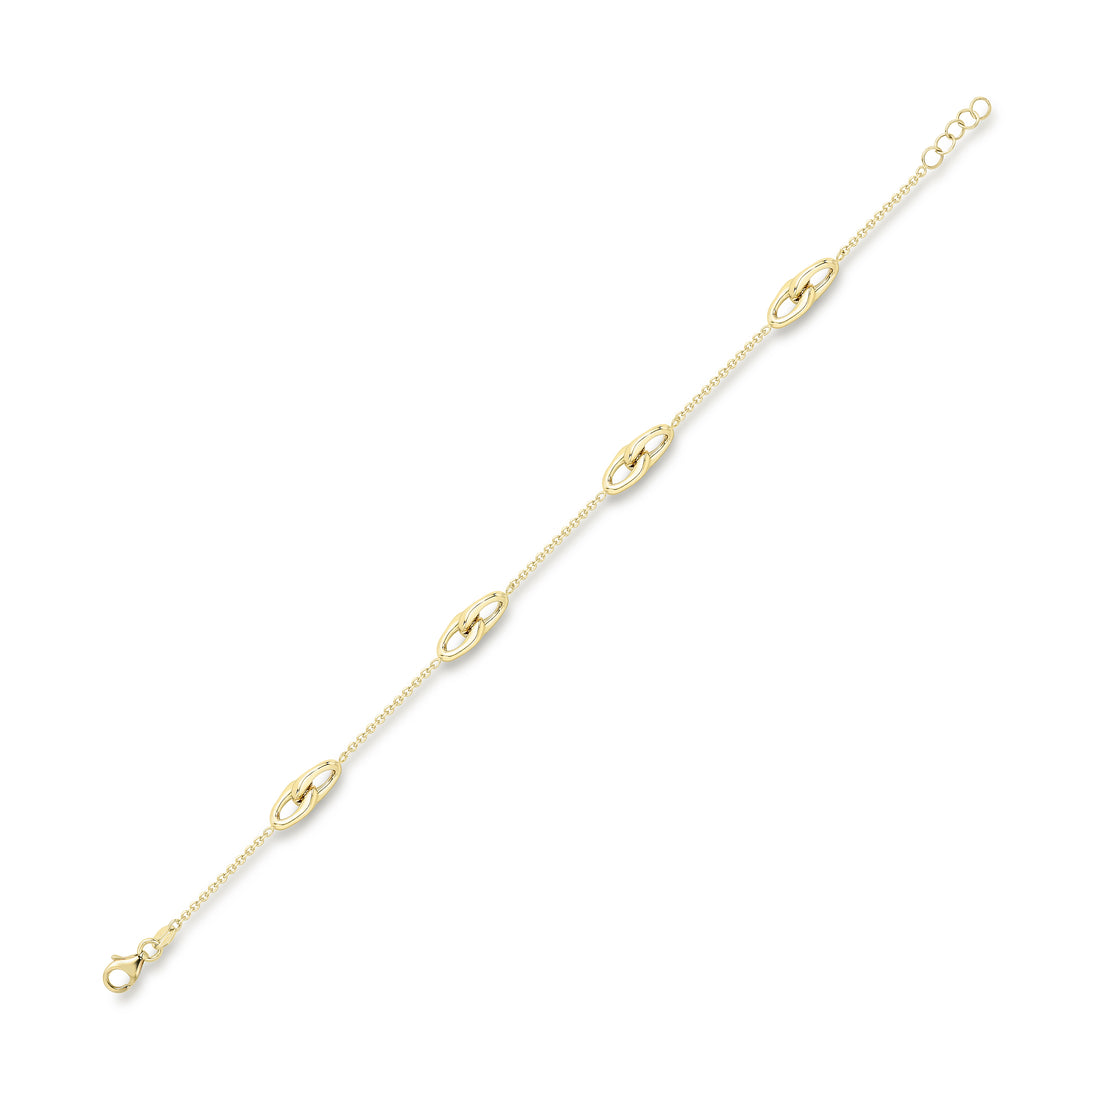 9ct. Yellow Gold Polished Interlocking Motif Bracelet